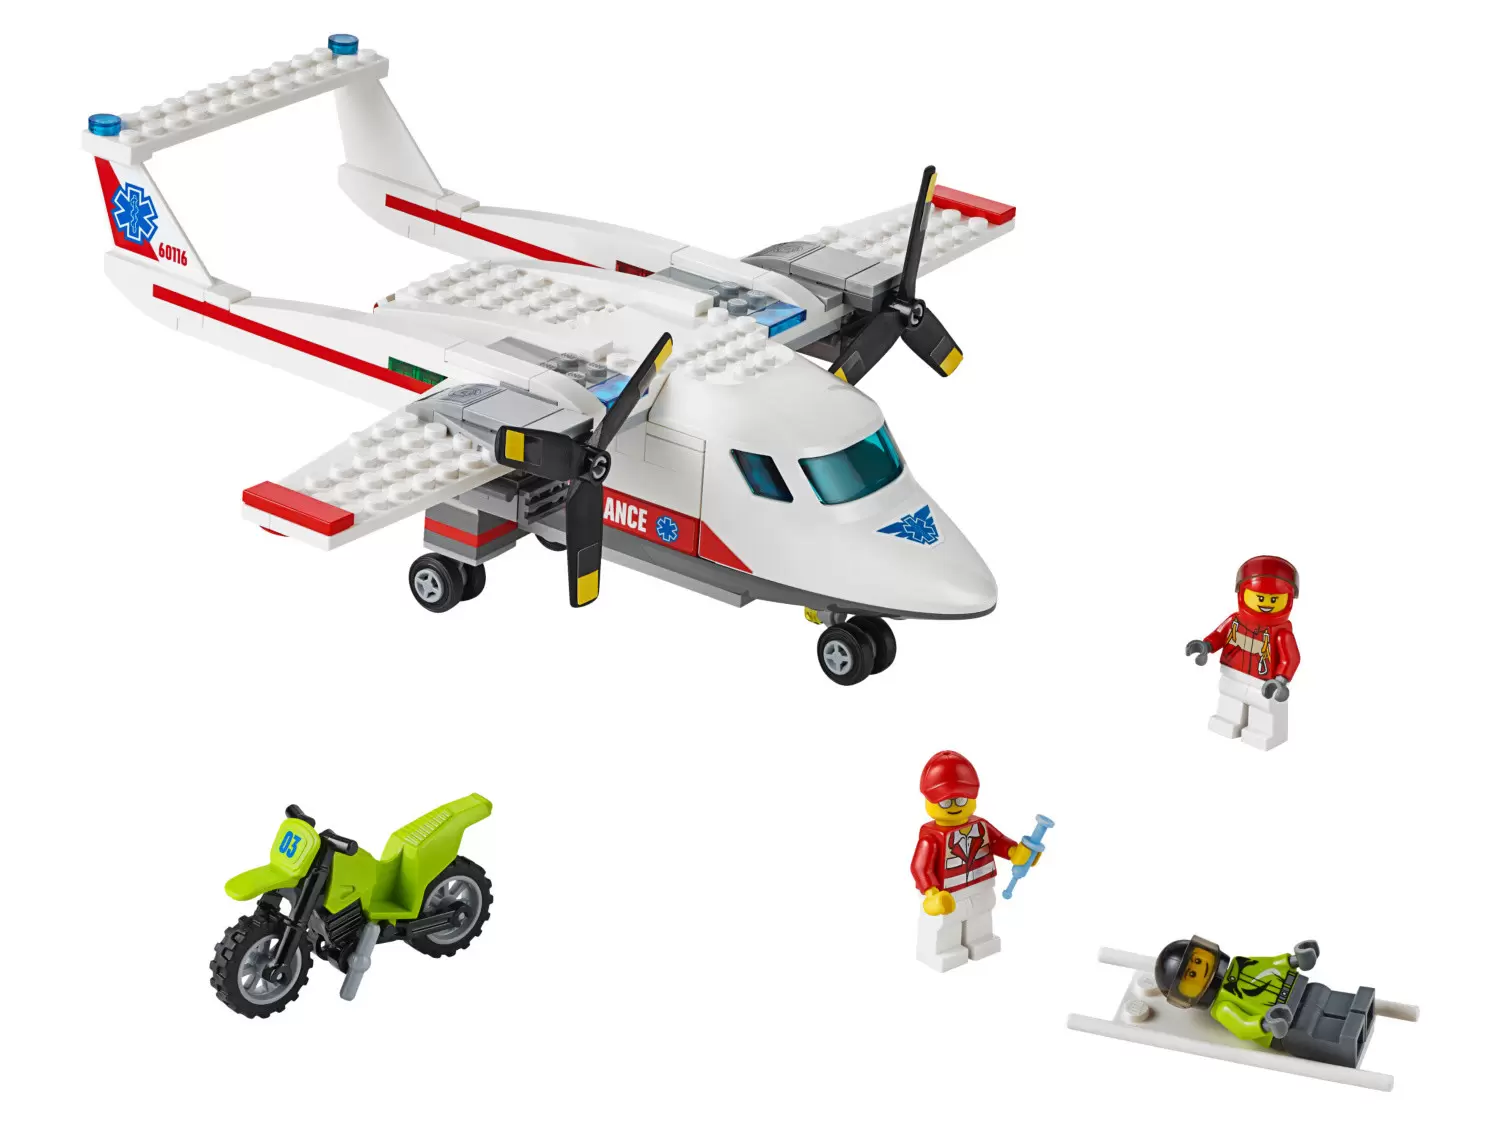 LEGO CITY - Ambulance Plane